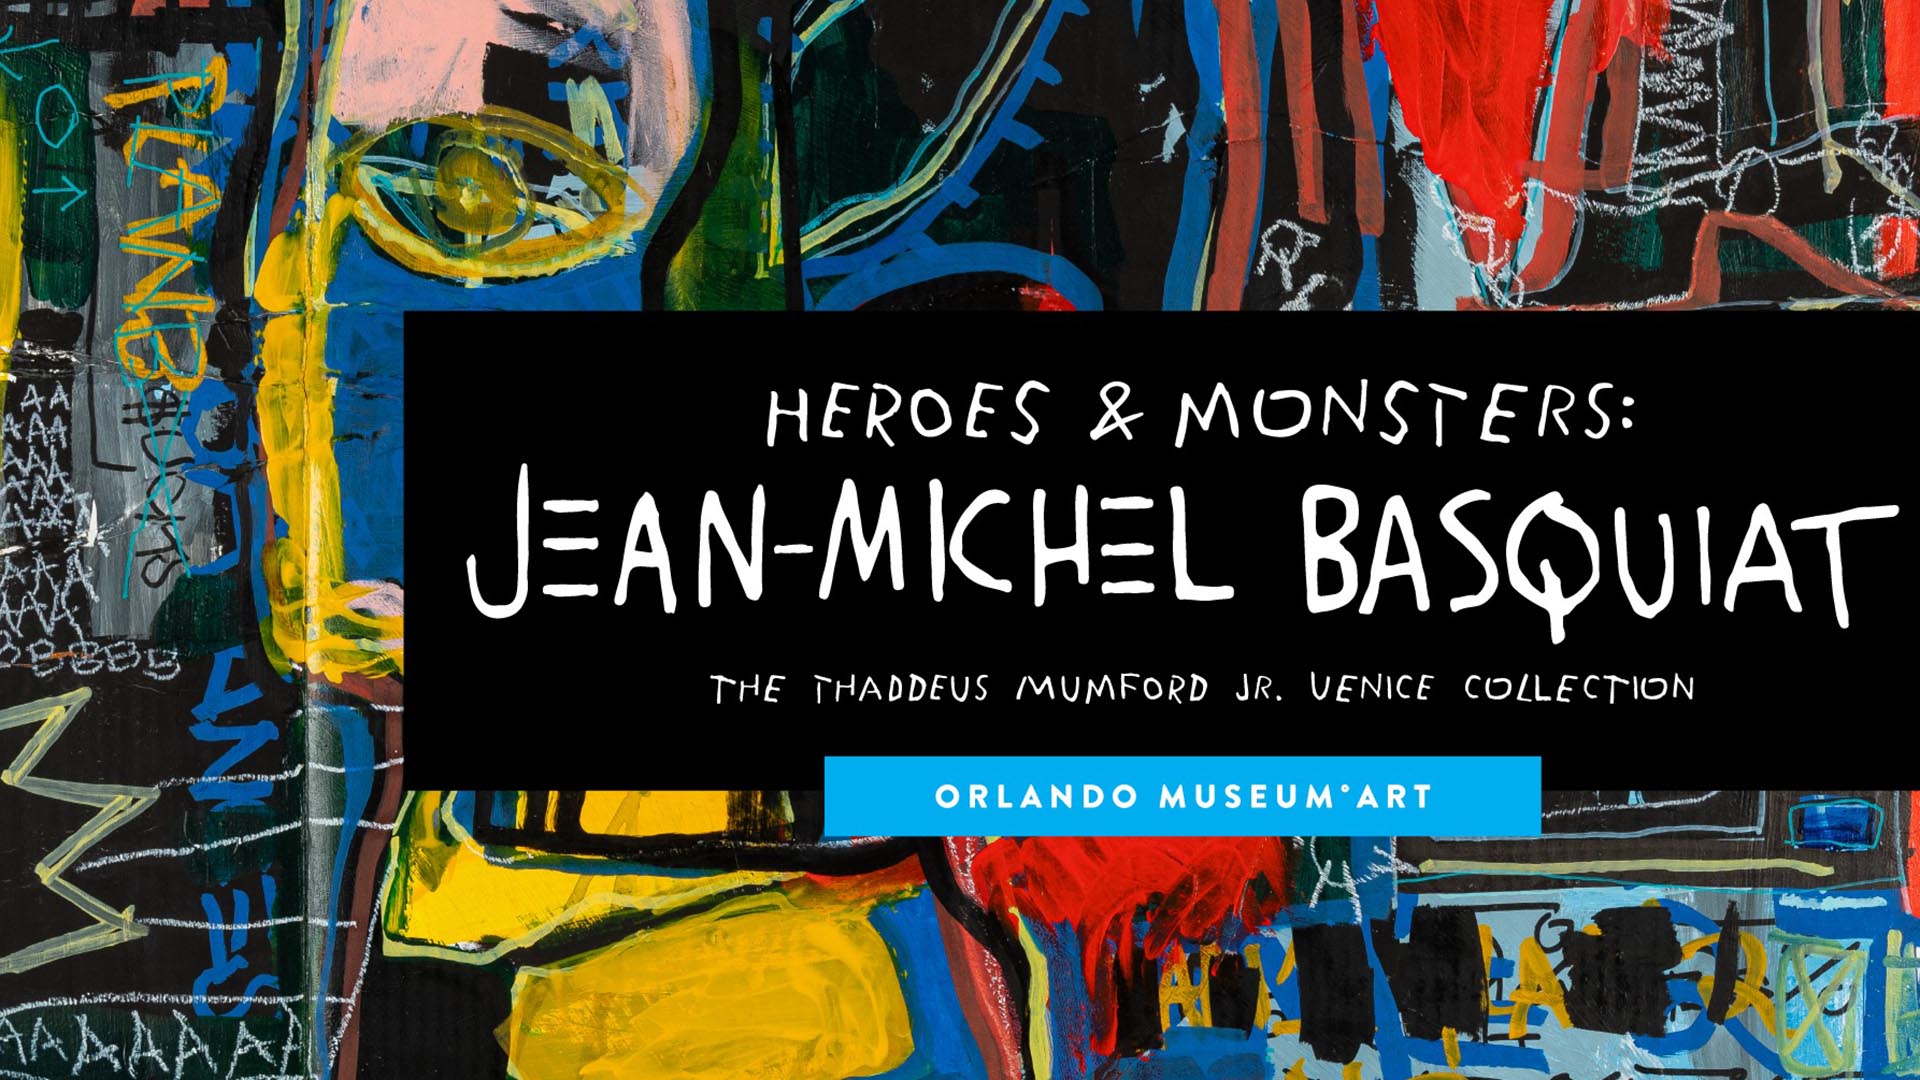 Escándalo en el Museo de Orlando: el FBI secuestra 25 obras Basquiat por sospechas de falsificación  